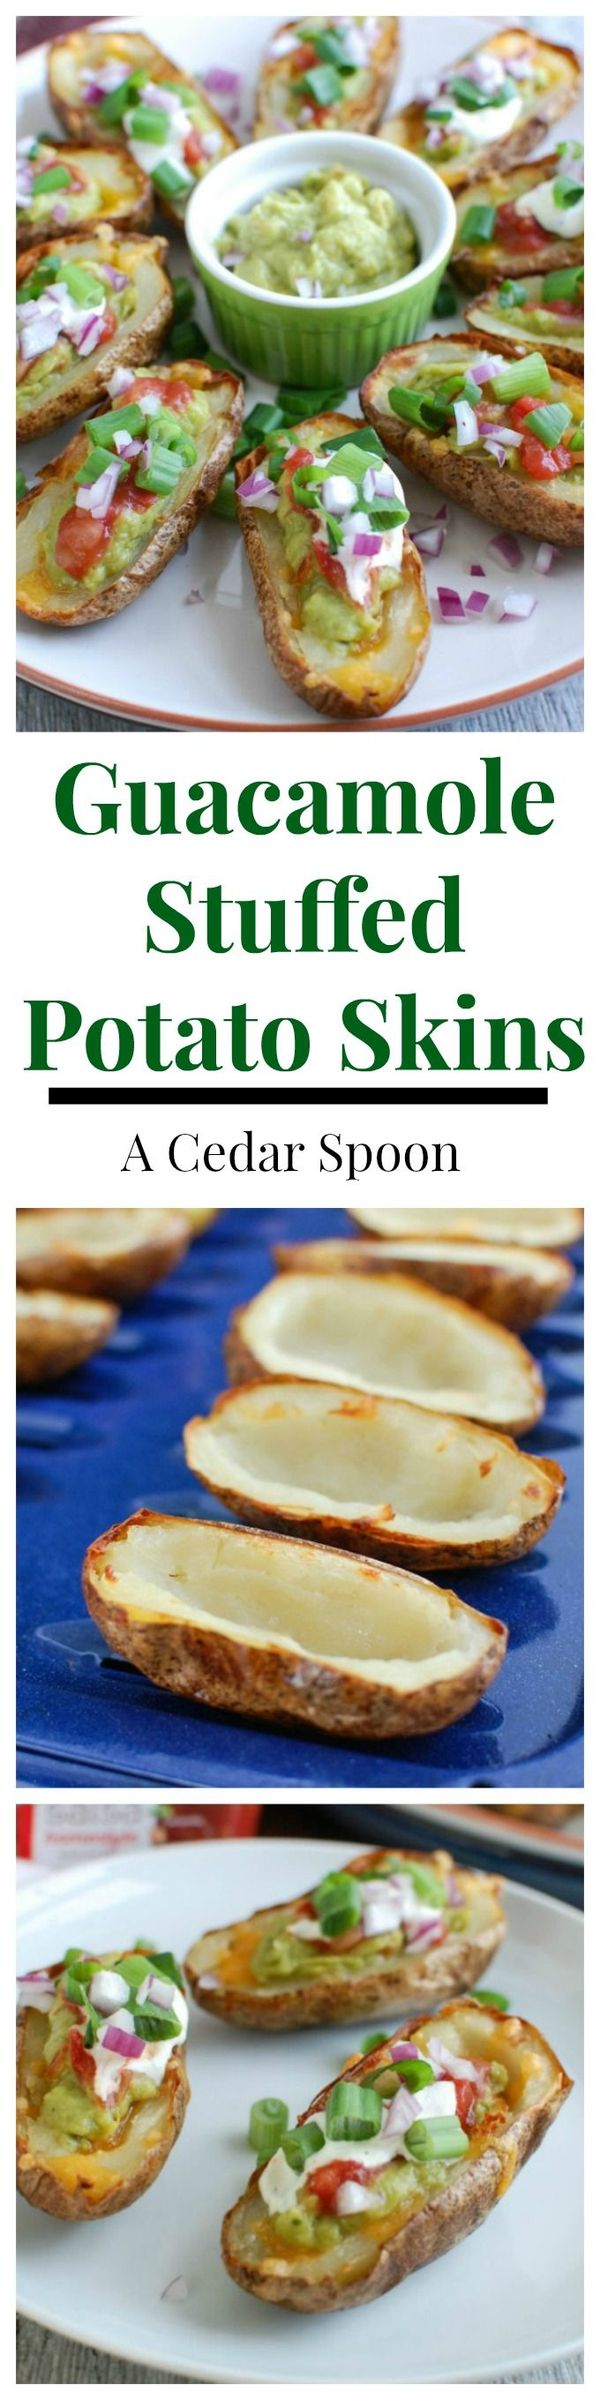 Guacamole Stuffed Potato Skins